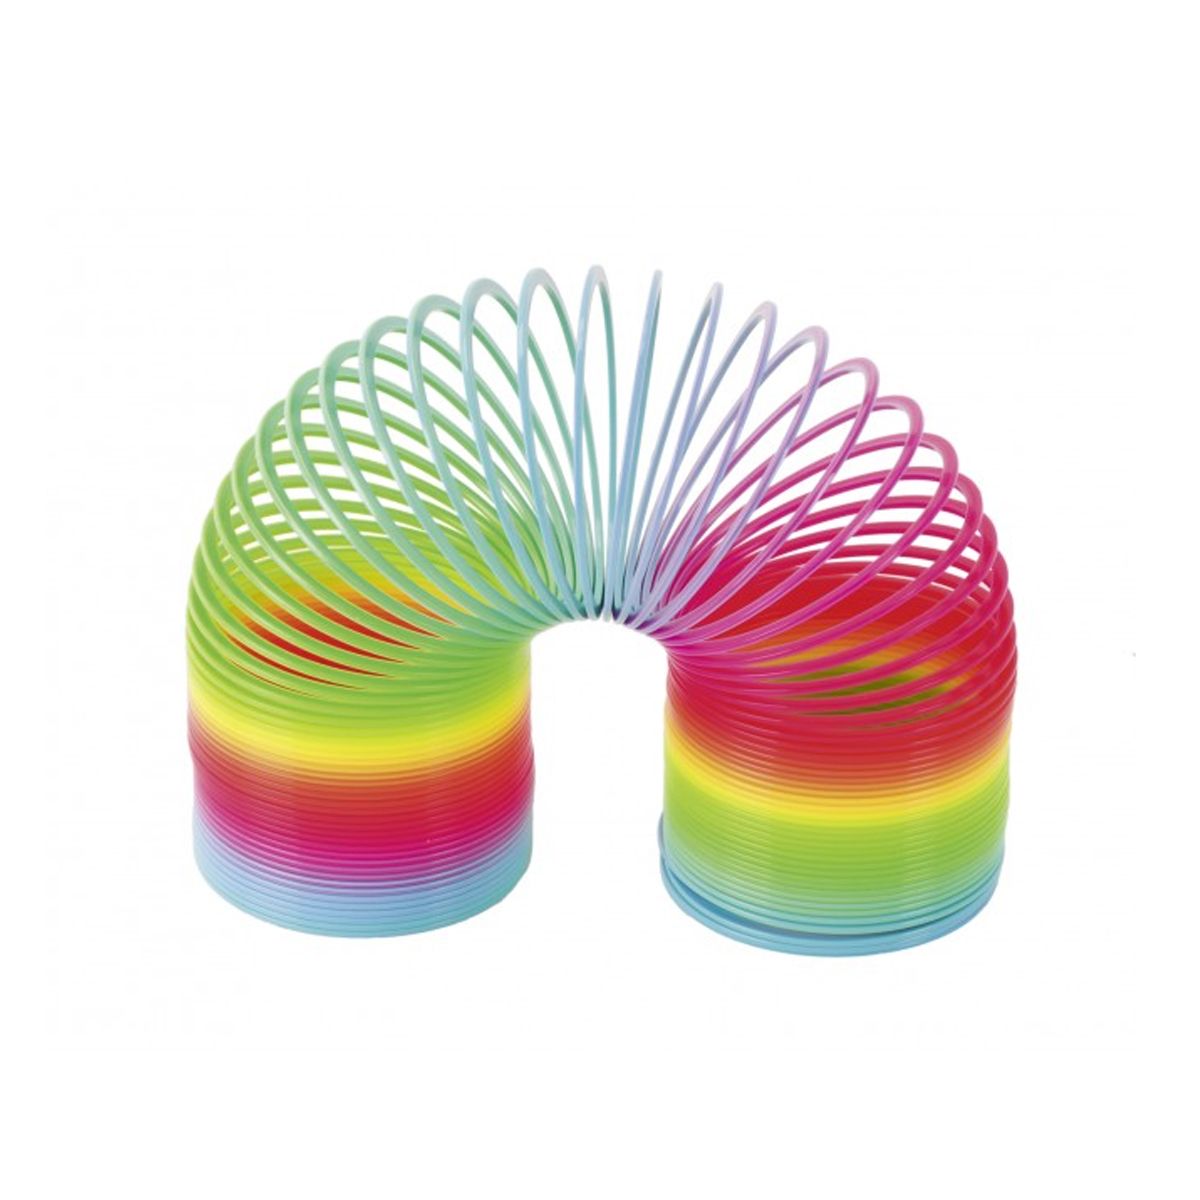 Slinky spiral til trapper i regnbuefarver.